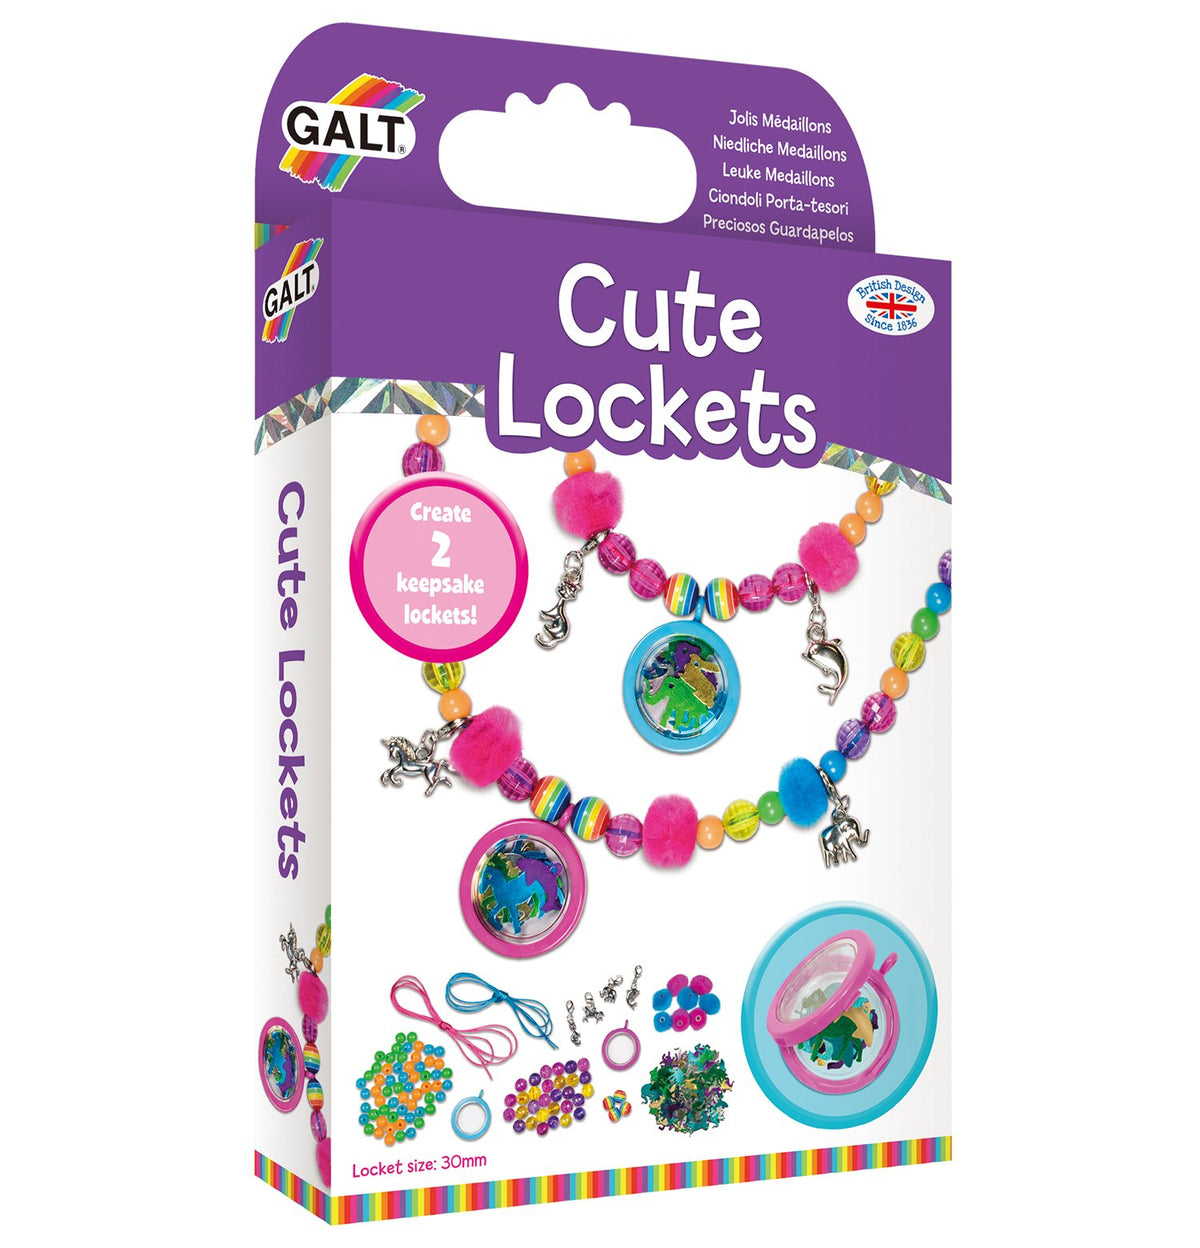 Cute Lockets - Galt